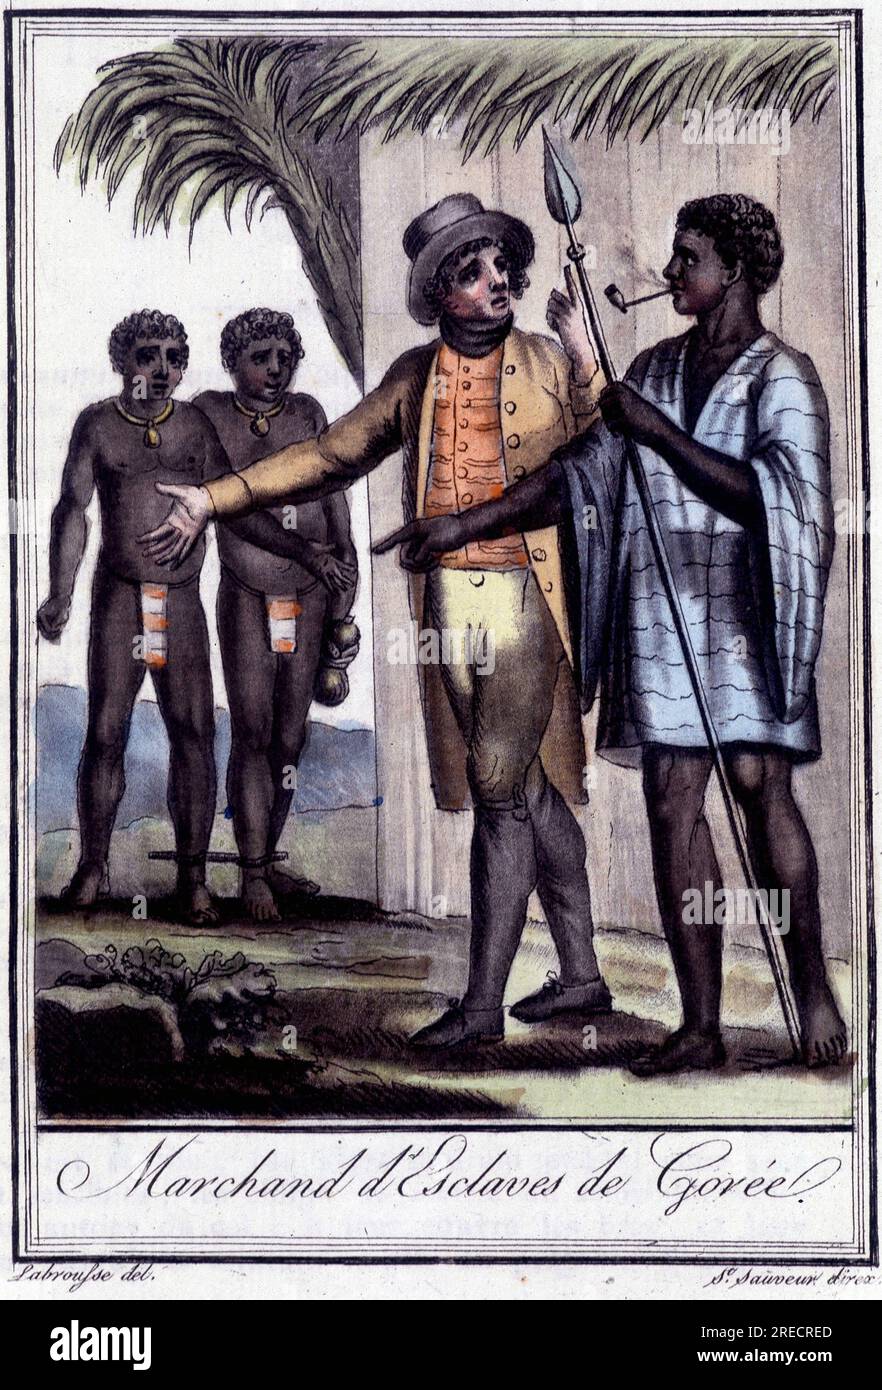 Marchand d'esclaves de Gorée - dans 'Encyclopedie des voyages' par Grasset St Sauveur, éd. Deroy, Paris, 1796 Banque D'Images